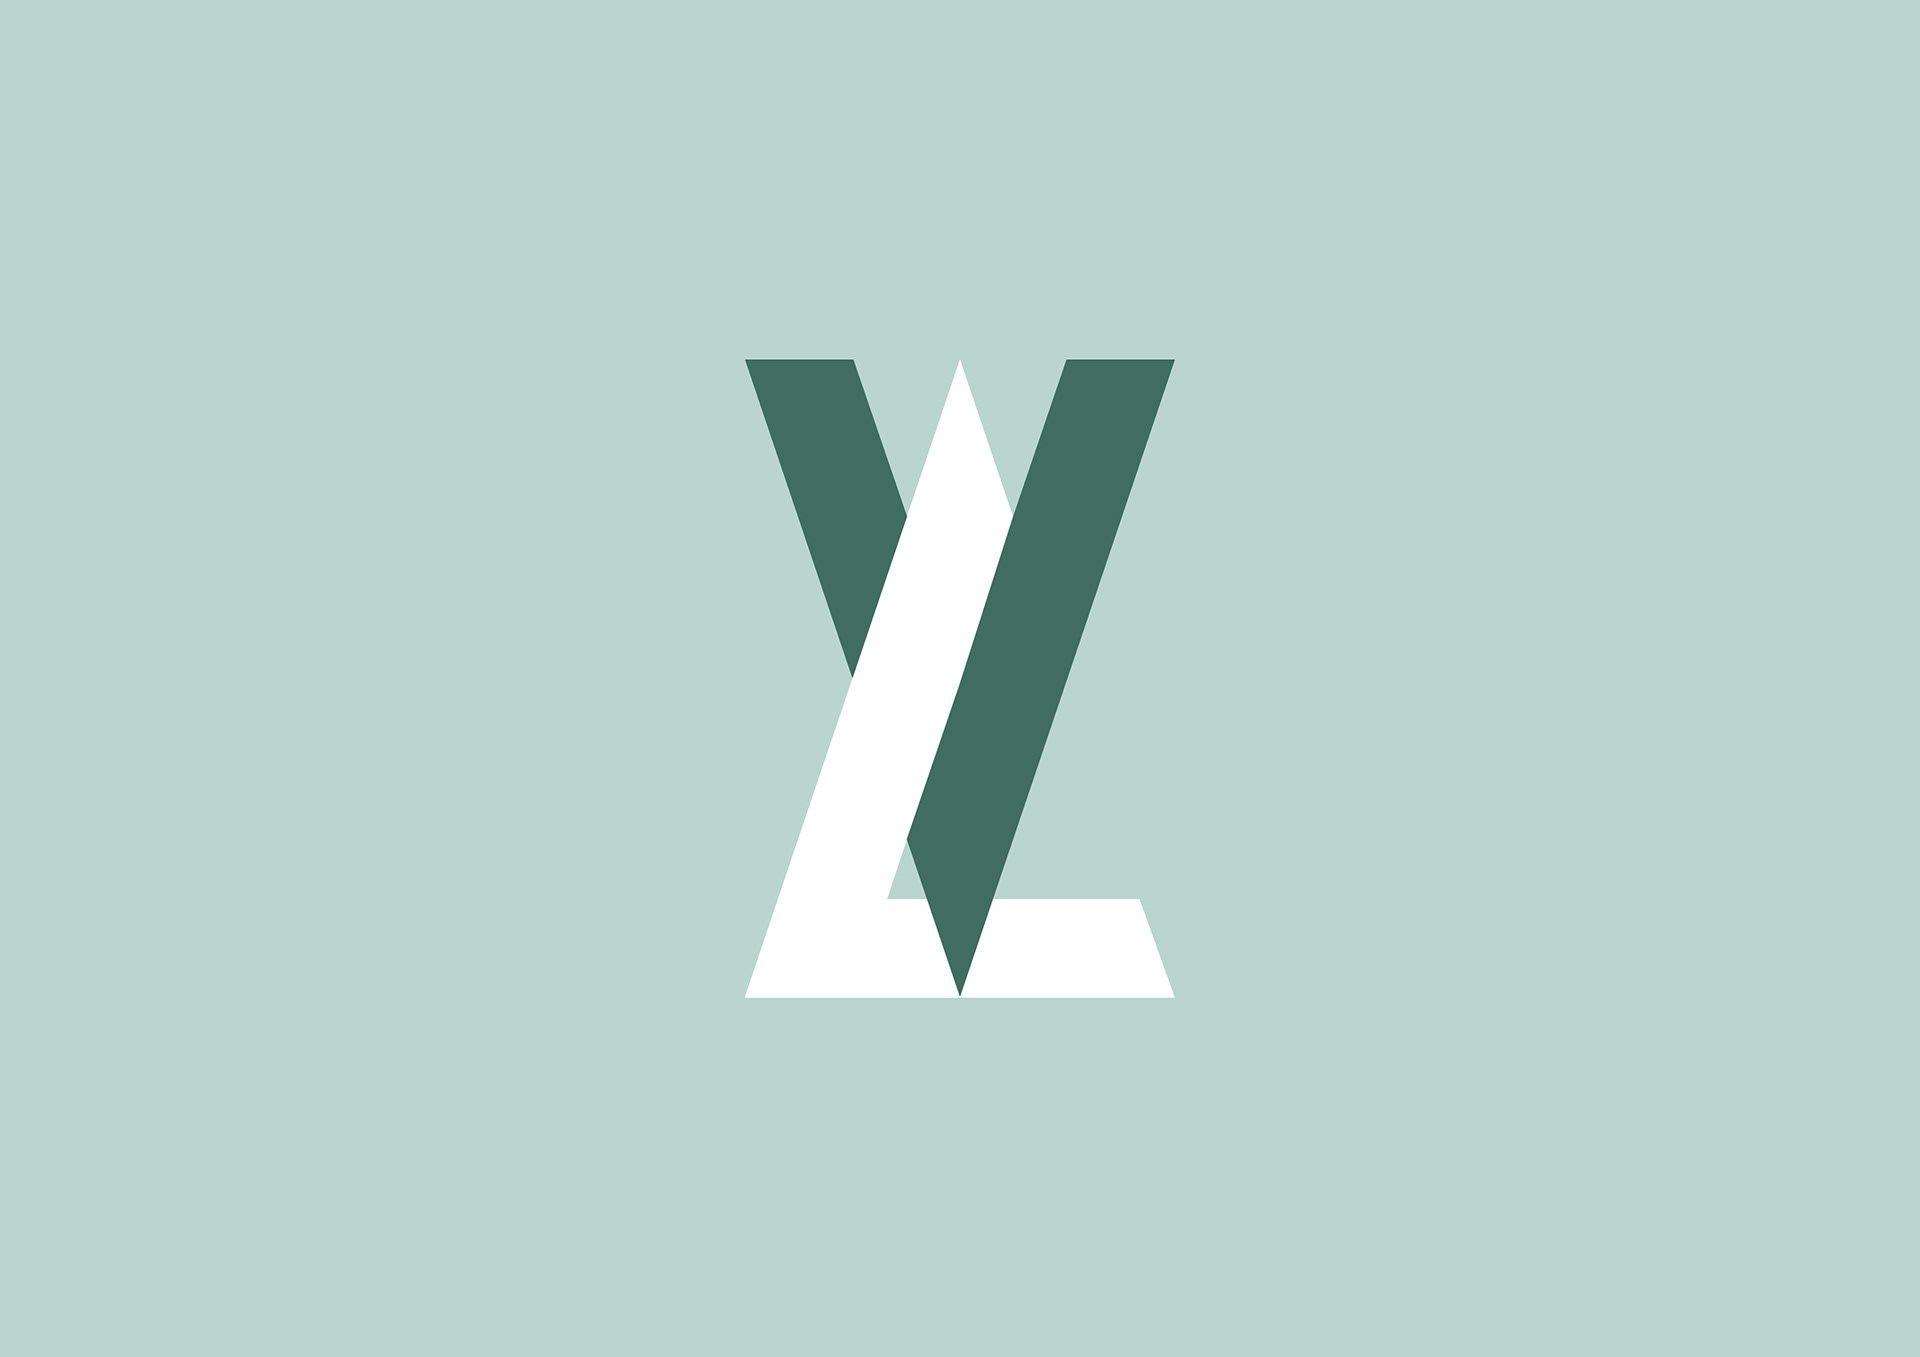 VL Brand Logo - Maurizio Pagnozzi - VL // Vittoria Lombardi